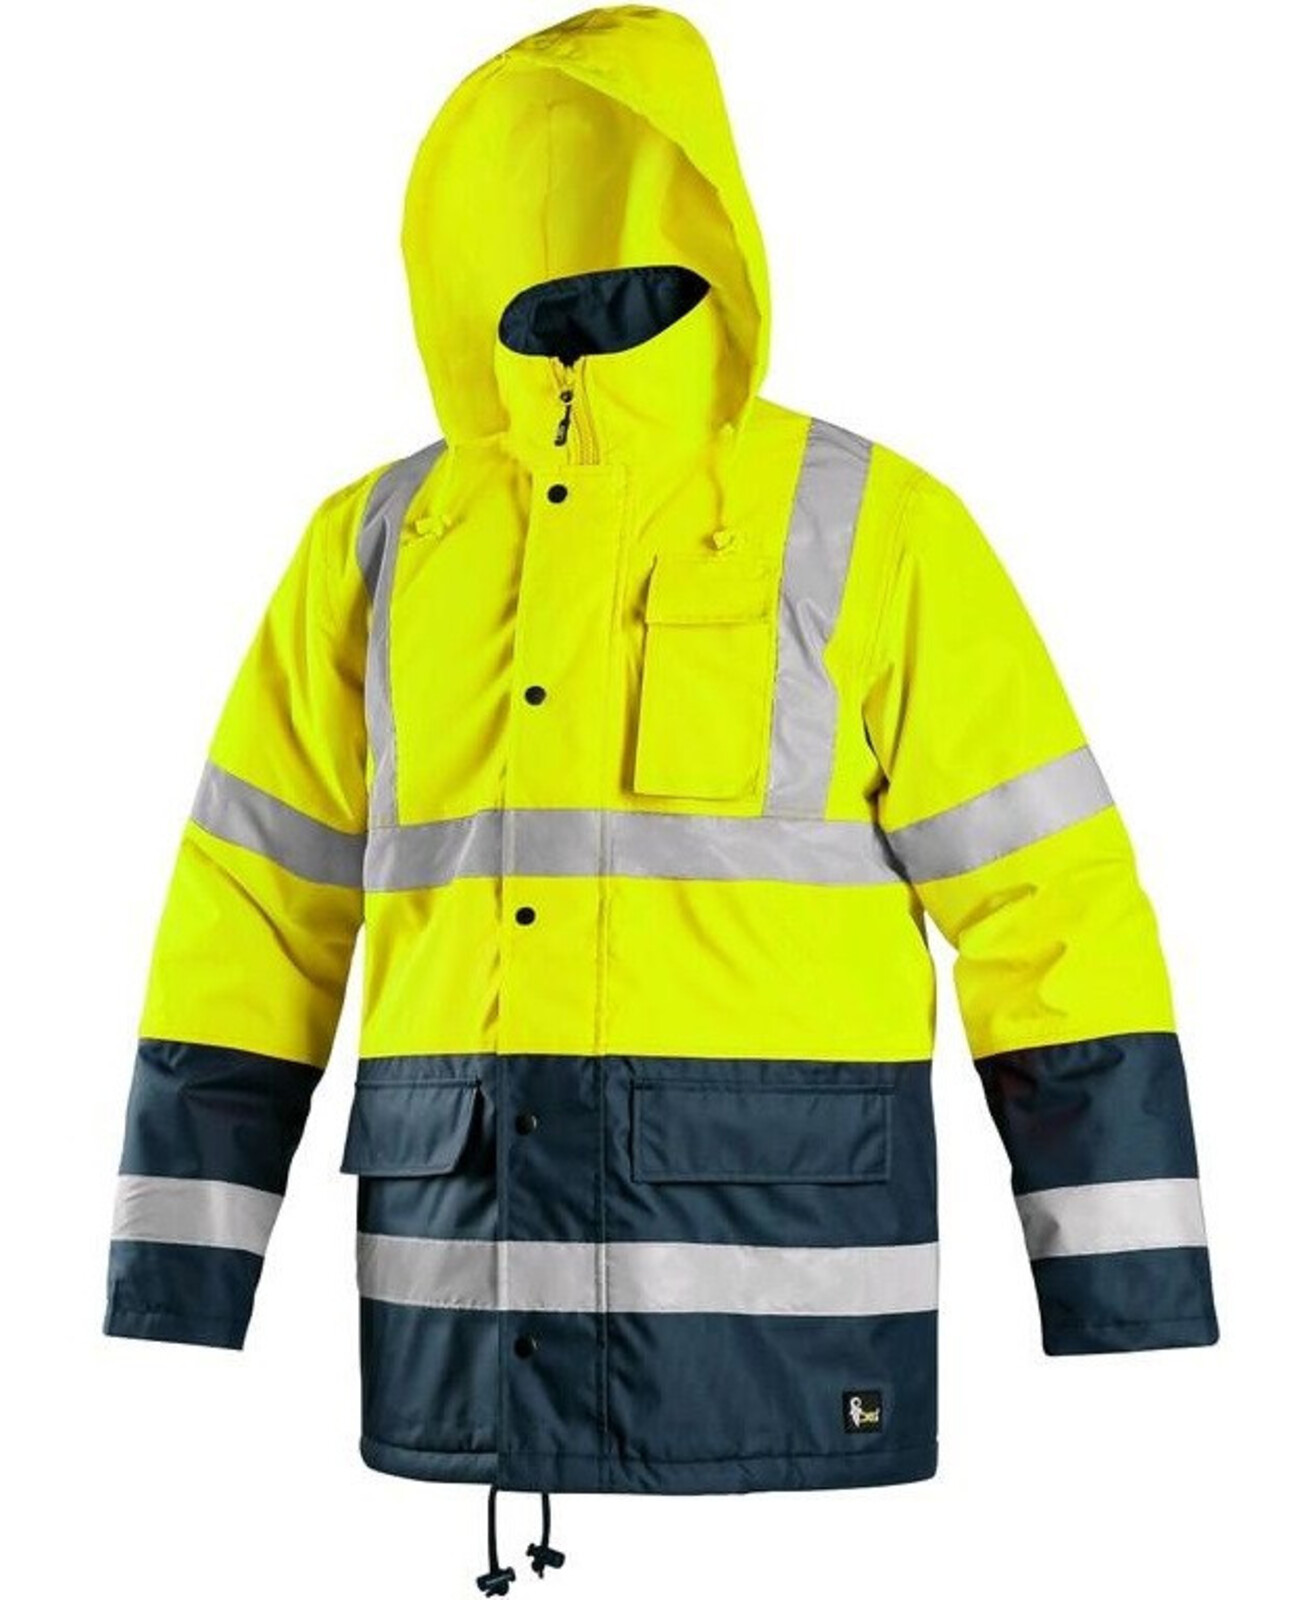 Pánska zateplená reflexná pracovná bunda CXS Oxford - veľkosť: XL, farba: žltá/navy